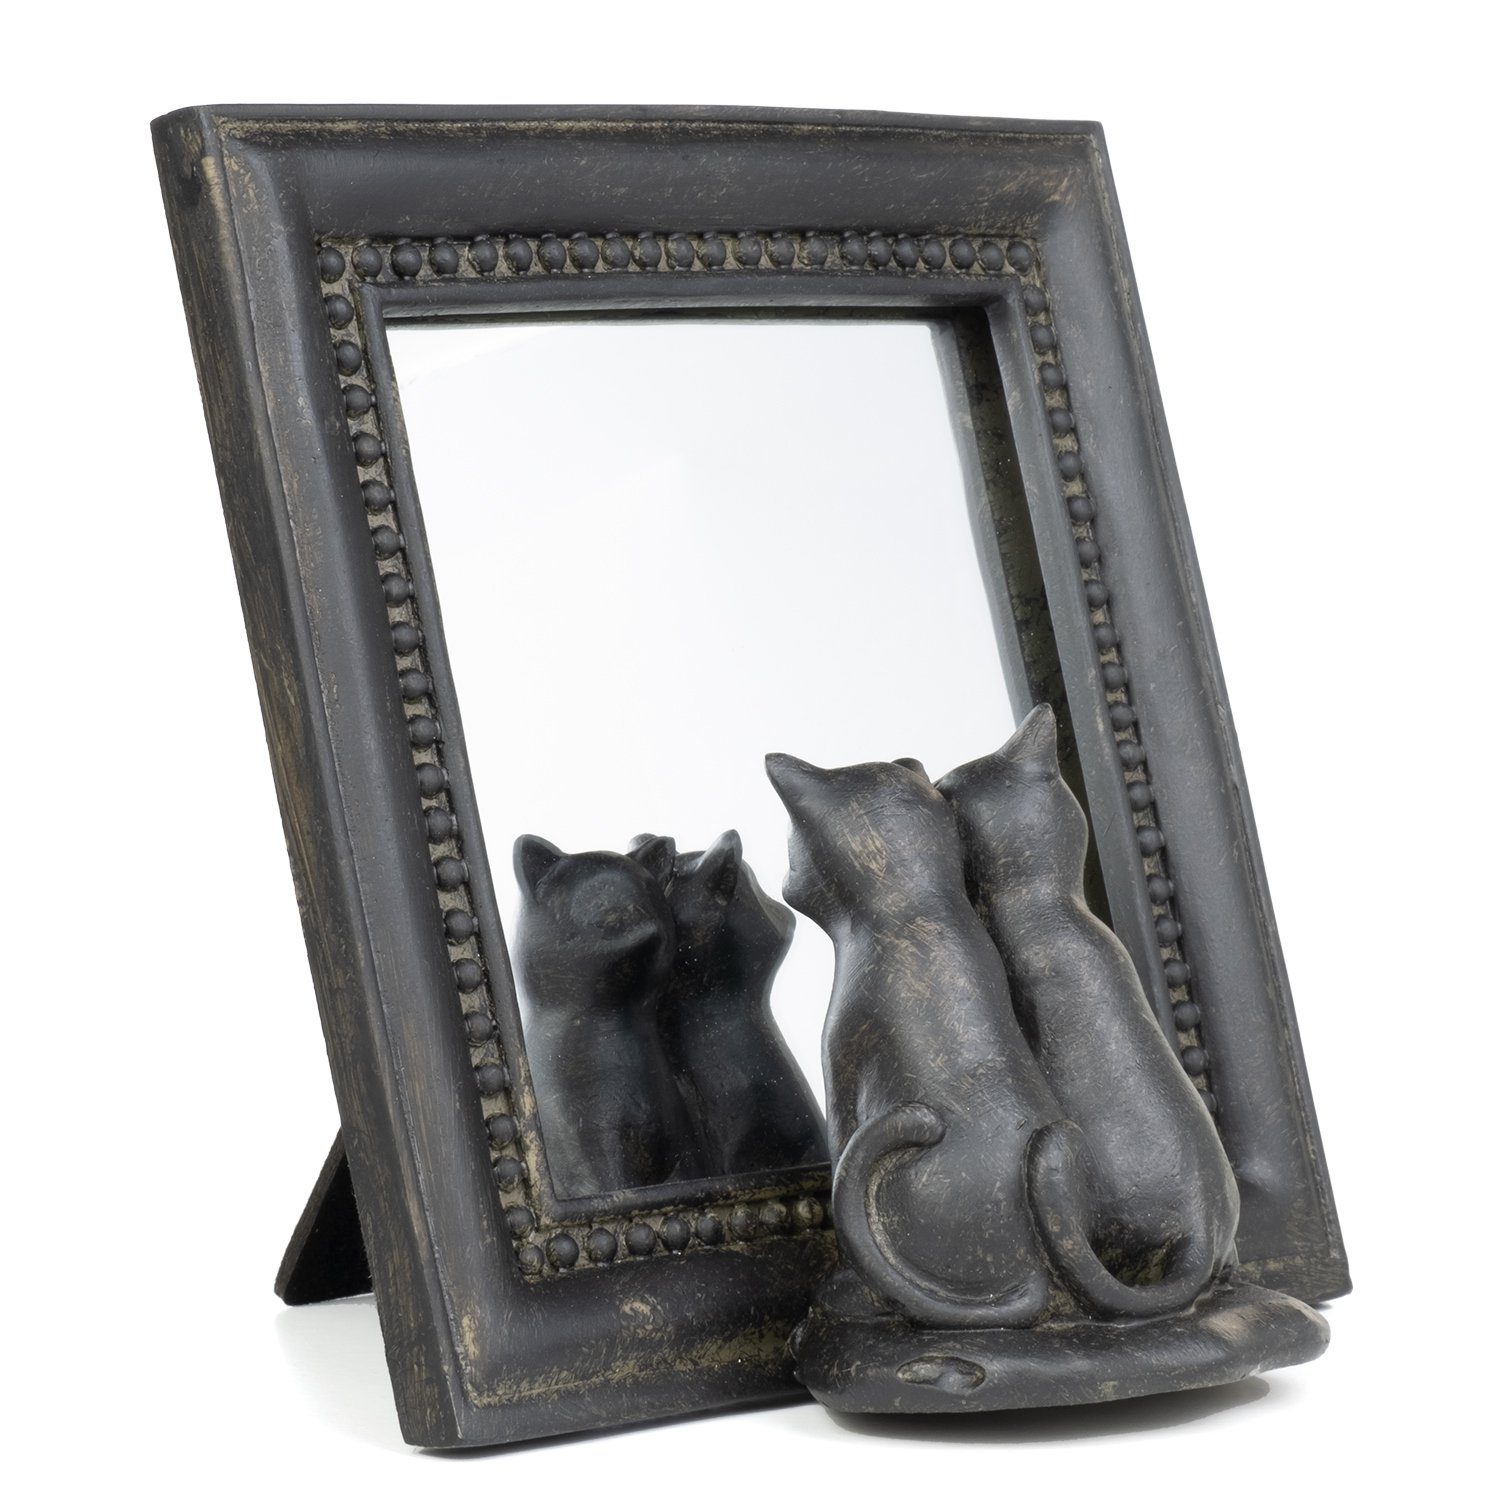 Moritz Dekofigur Deko-Spiegel Katzenpärchen sitz vor Spiegel aus Polyresin schwarz, Spiegel Antik Verziert Ornamente Dekoration